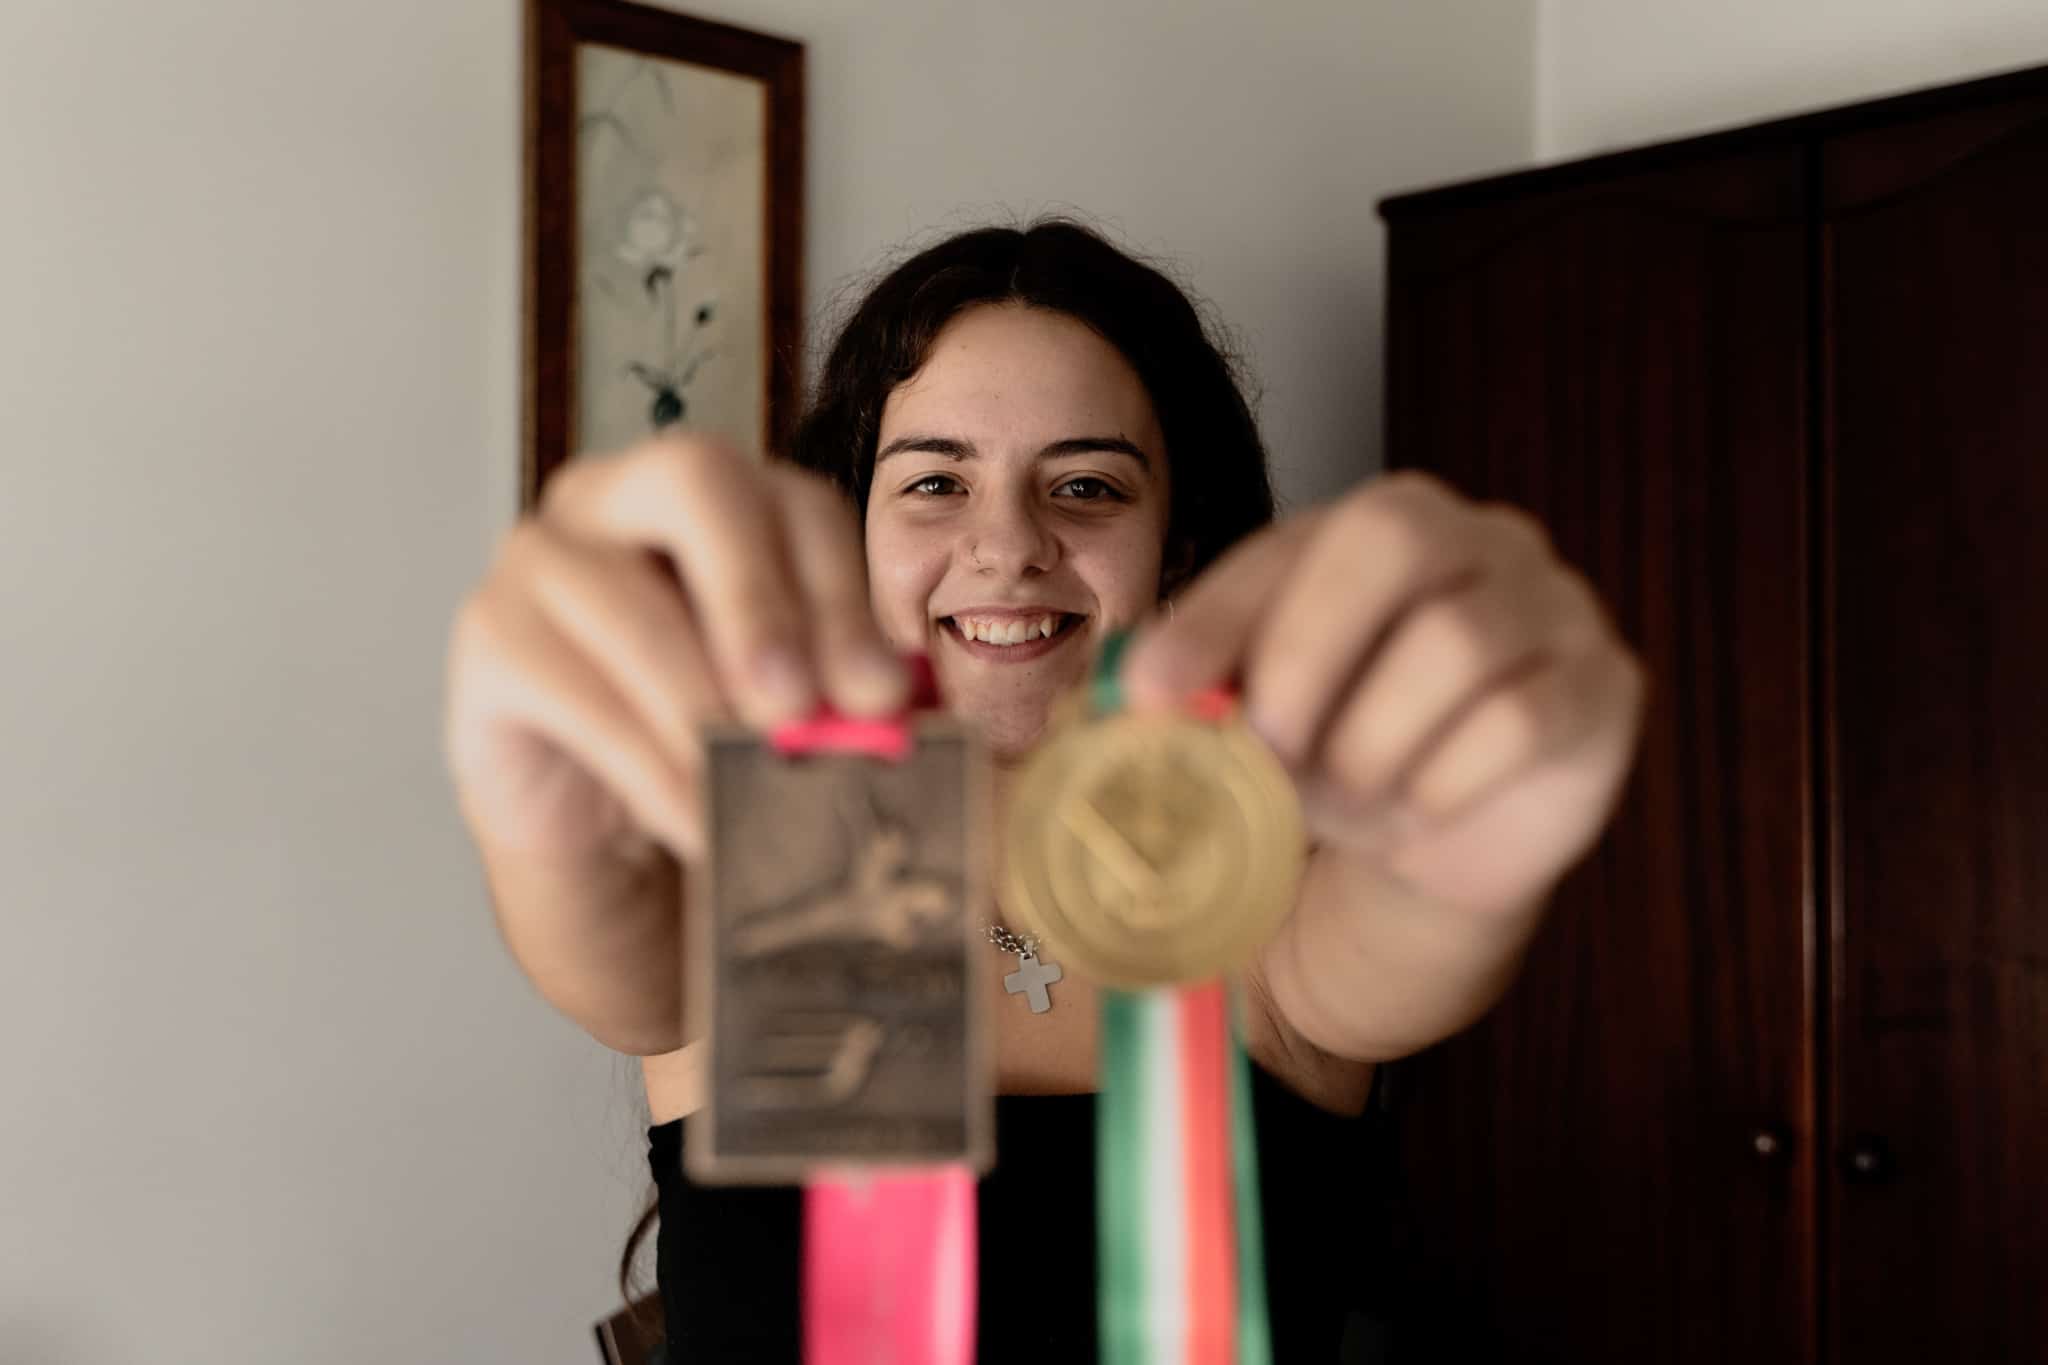 ginasta Matilde Costa, campeã de duplo minitrampolim apoiada pelos Doutor Finanças, mostra algumas das suas medalhas